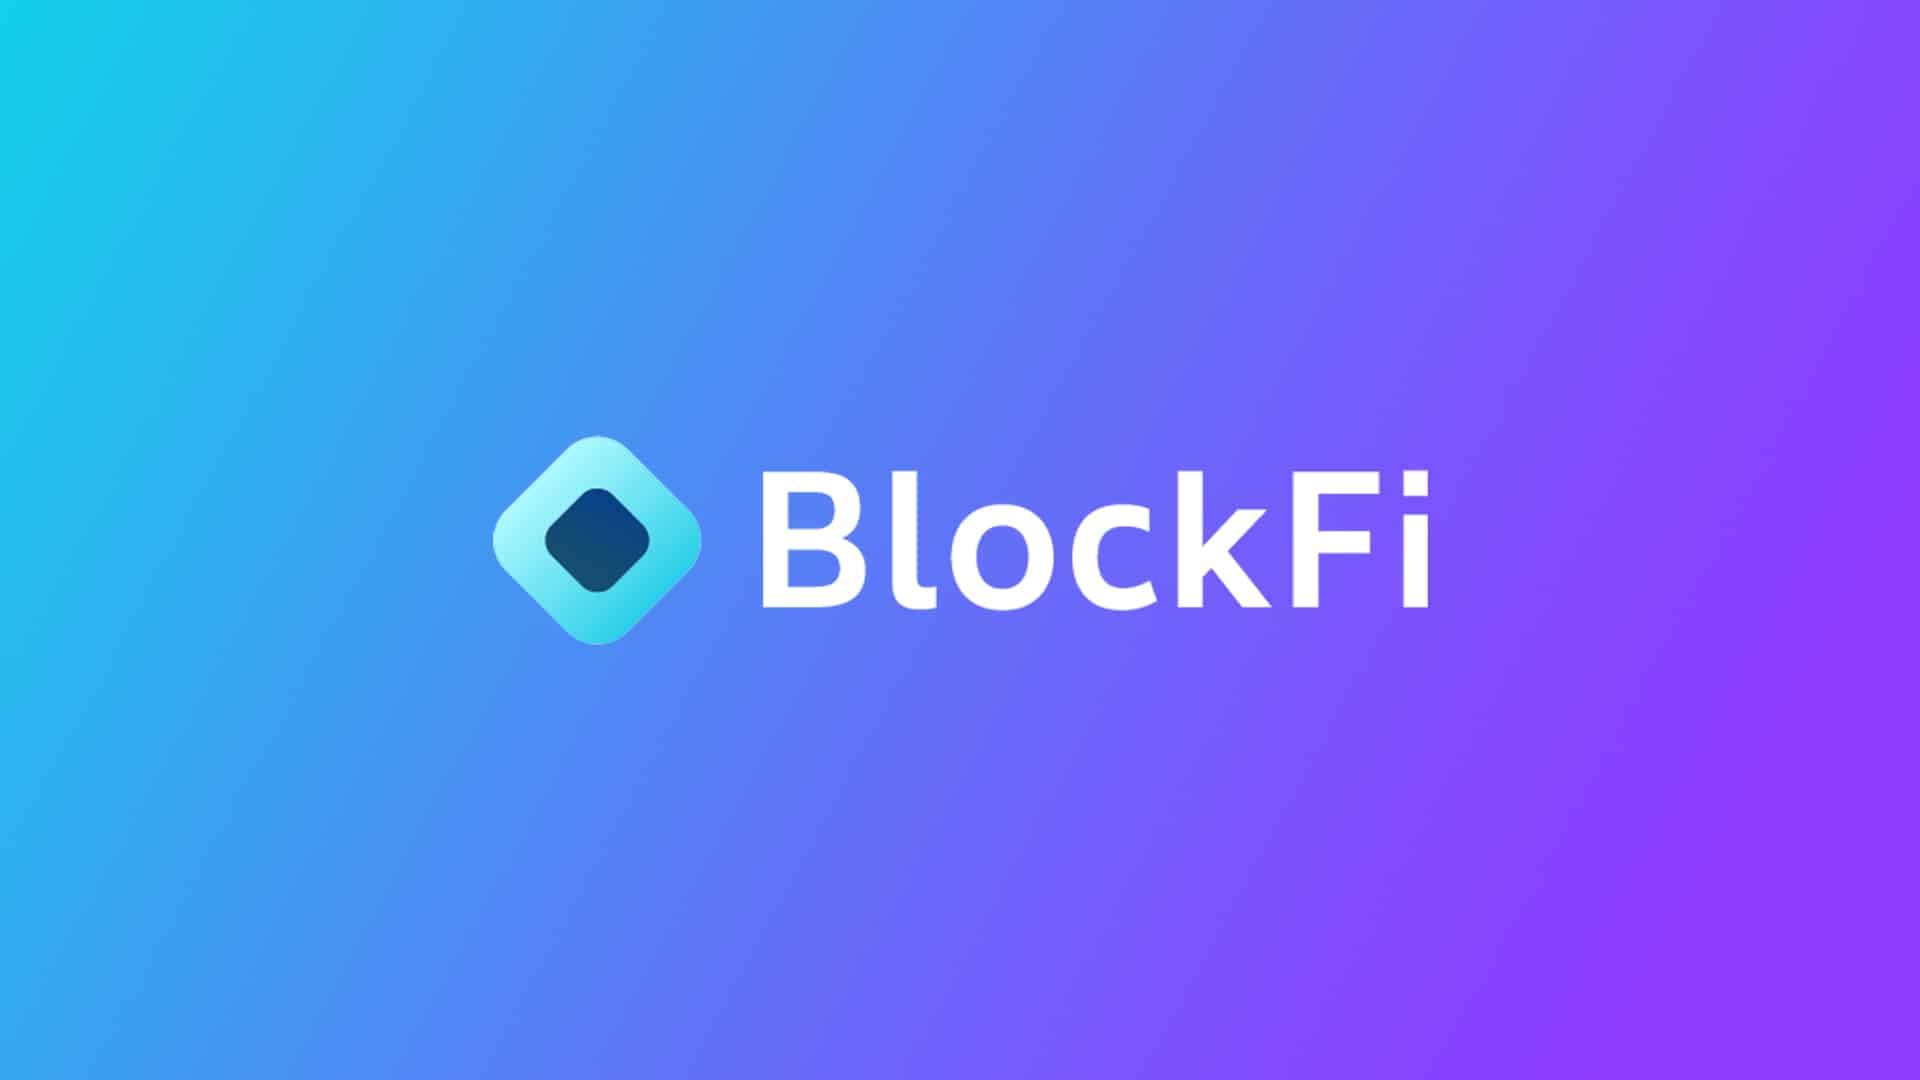    BlockFi  ,  